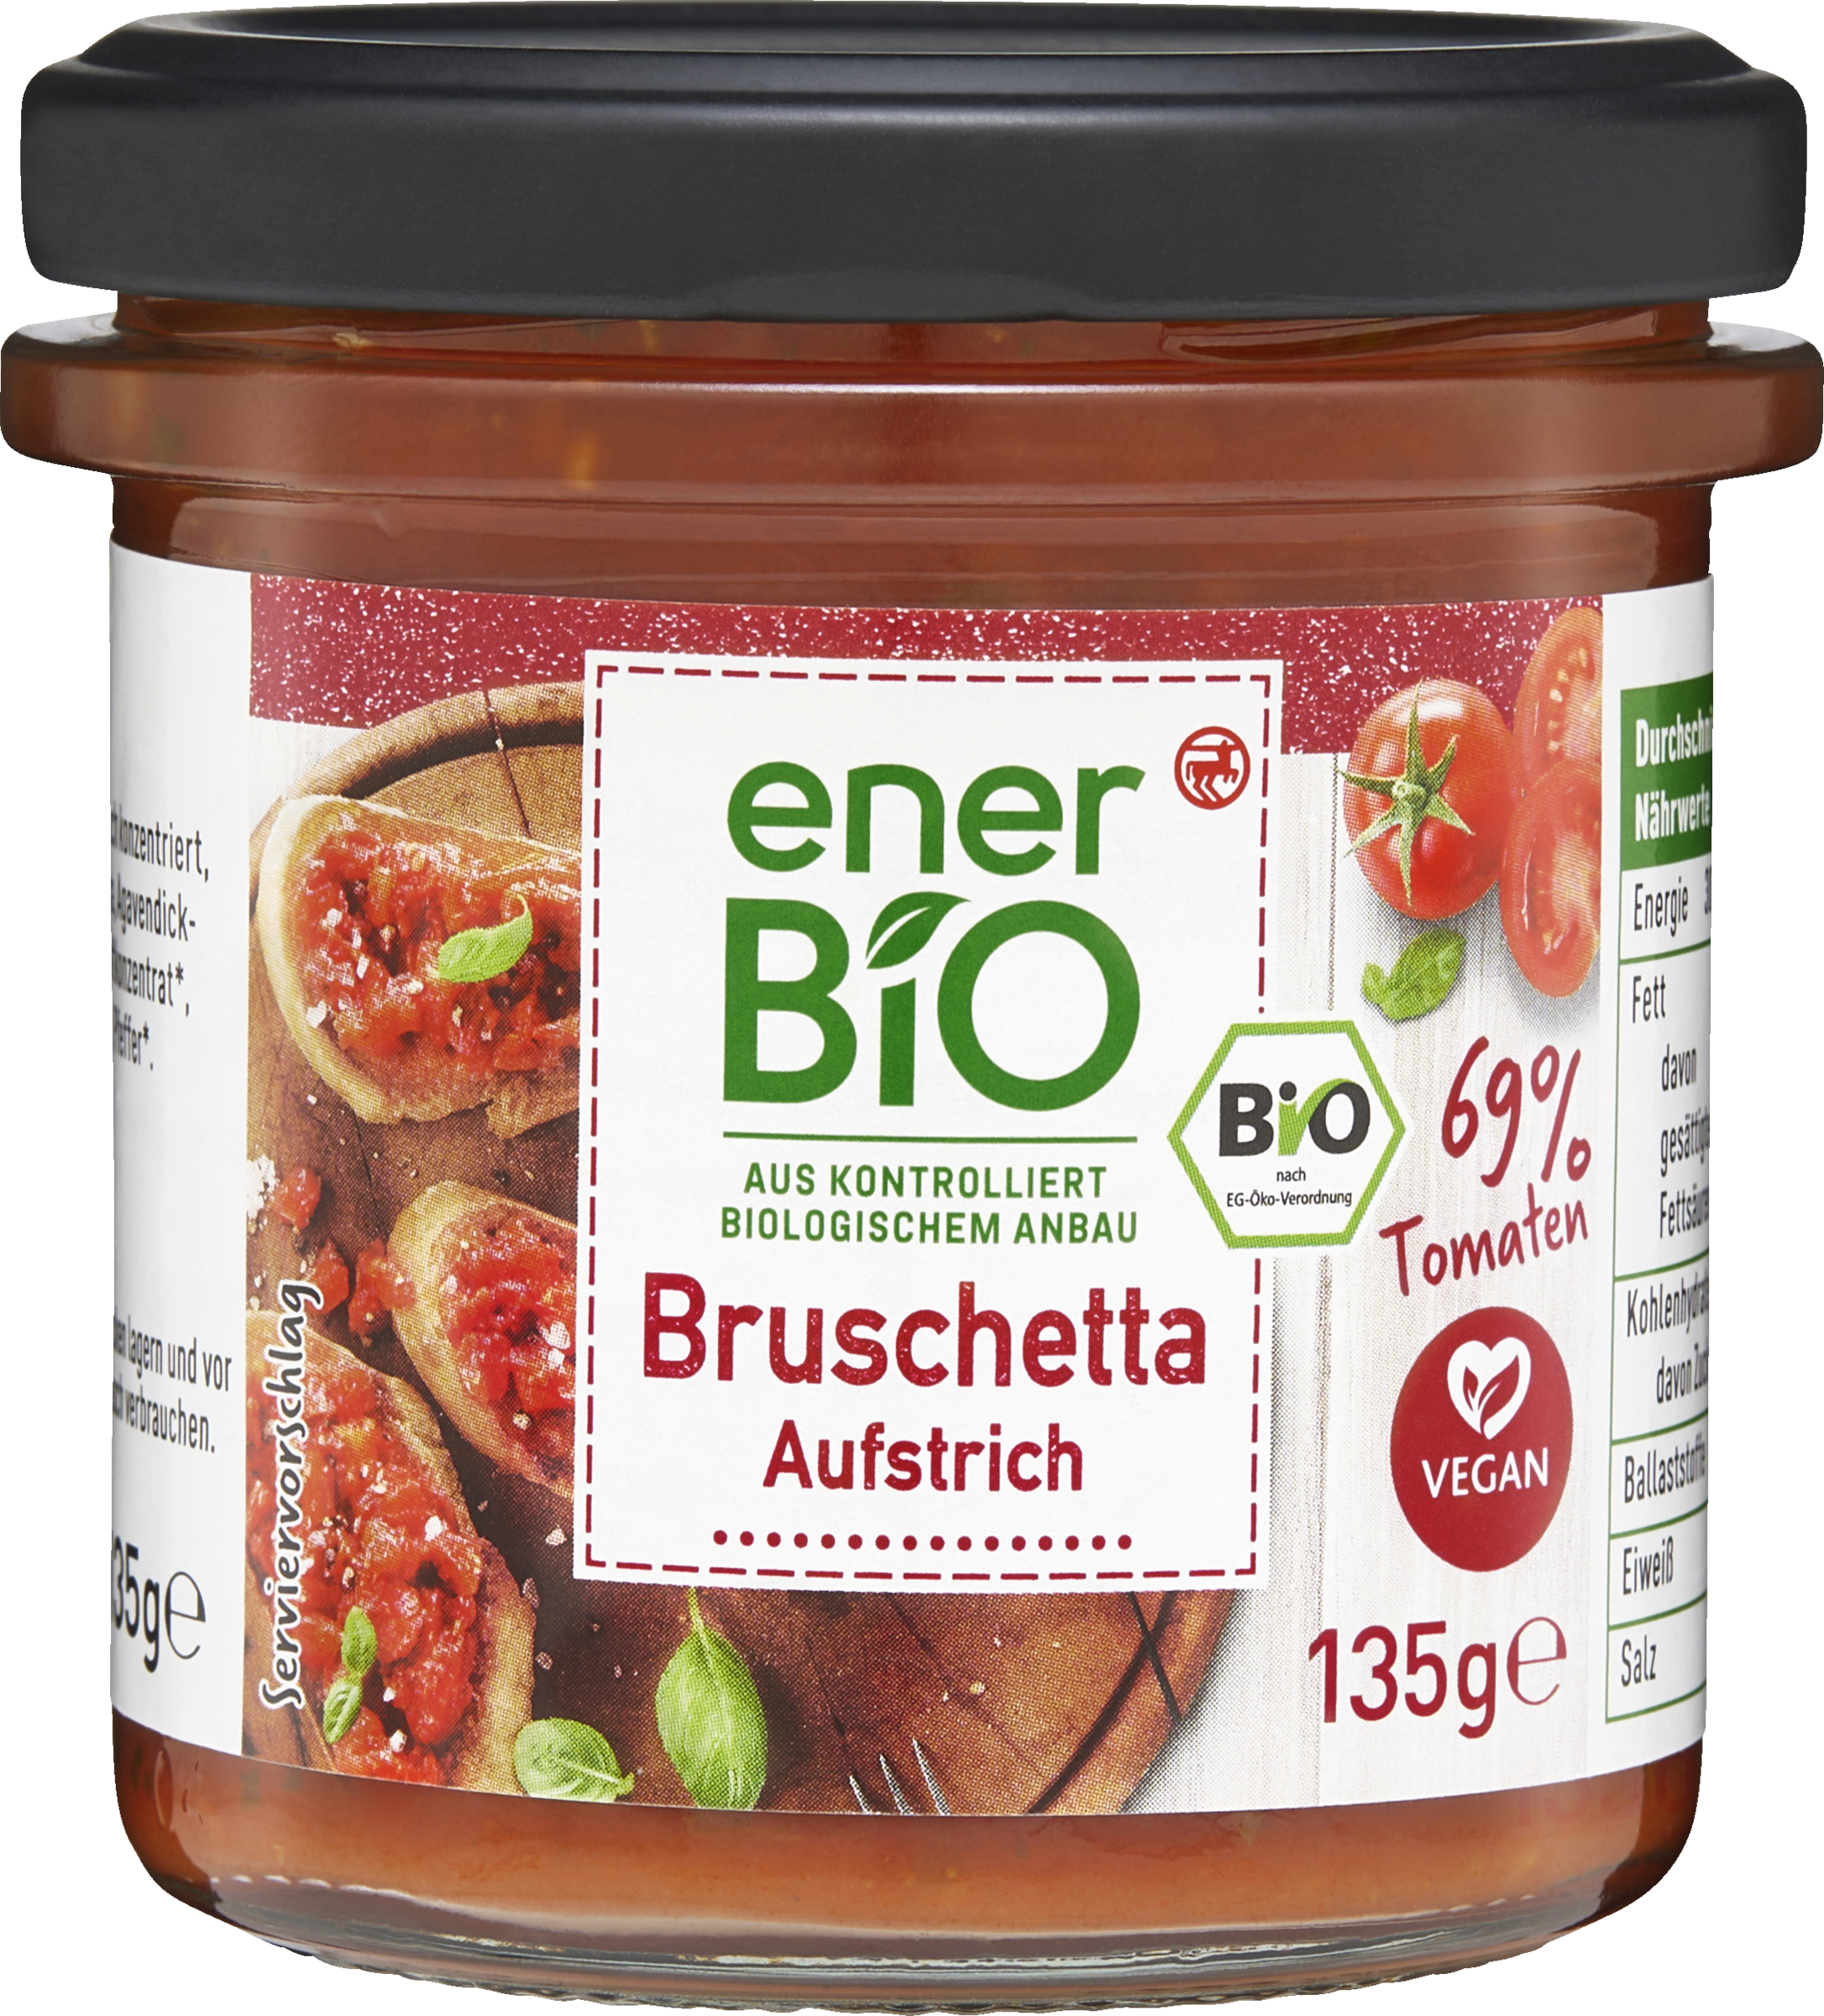 enerBiO Bruschetta Aufstrich online kaufen | rossmann.de